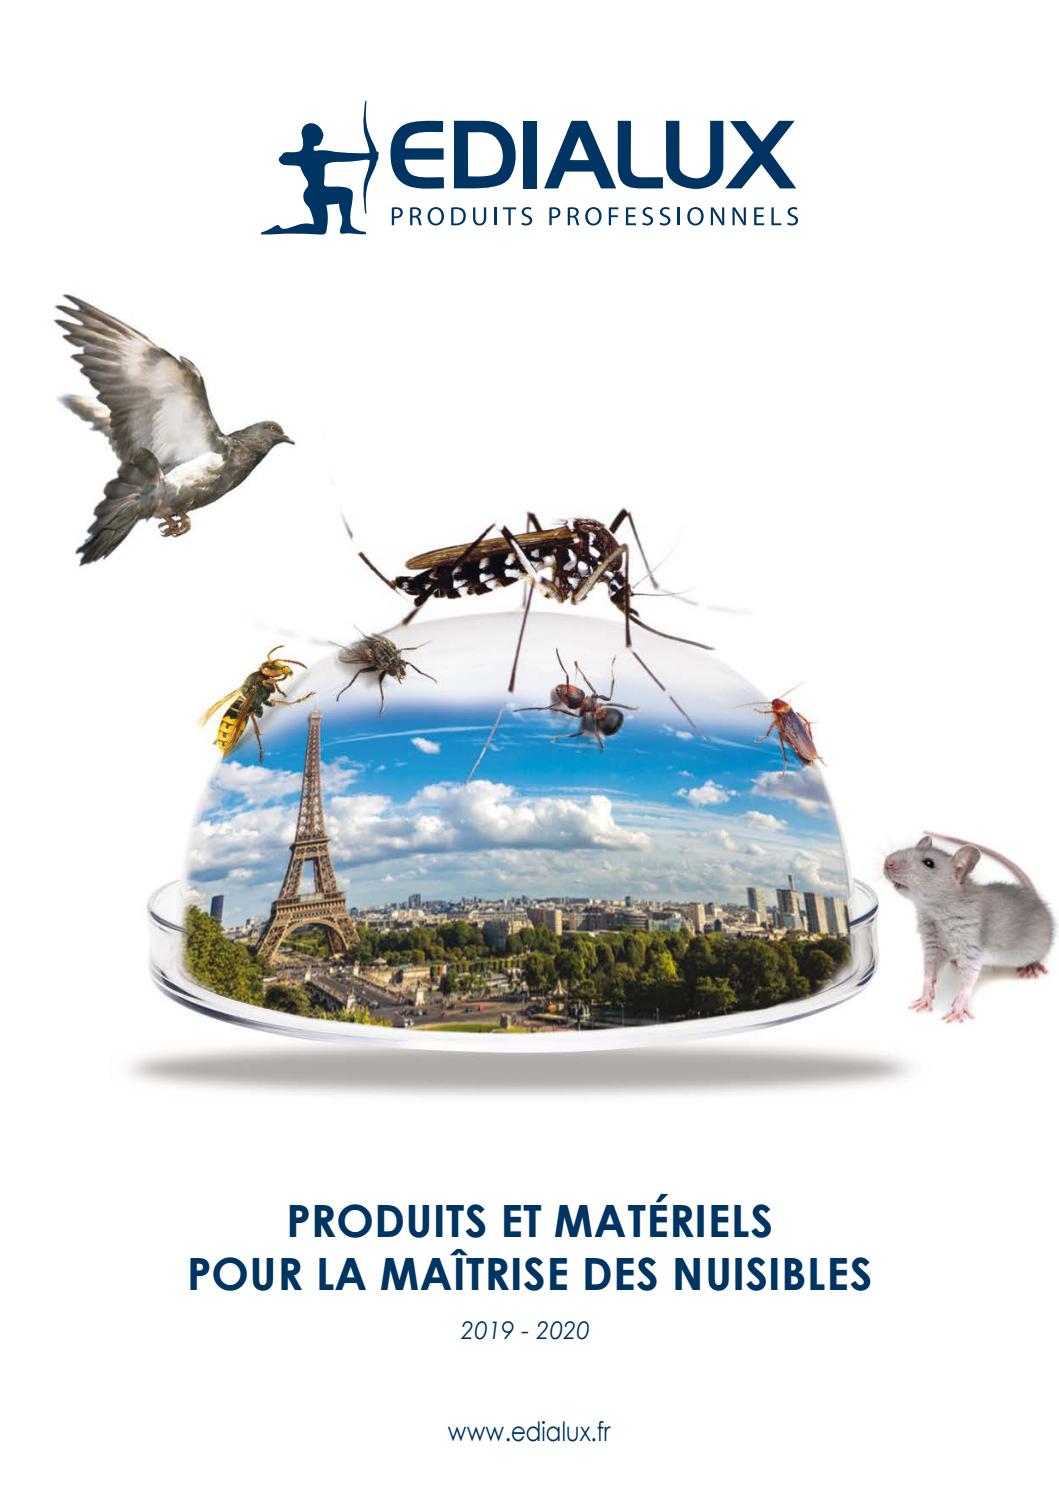 Blatte De Jardin Charmant Catalogue Edialux 2019 20 by Edialux issuu